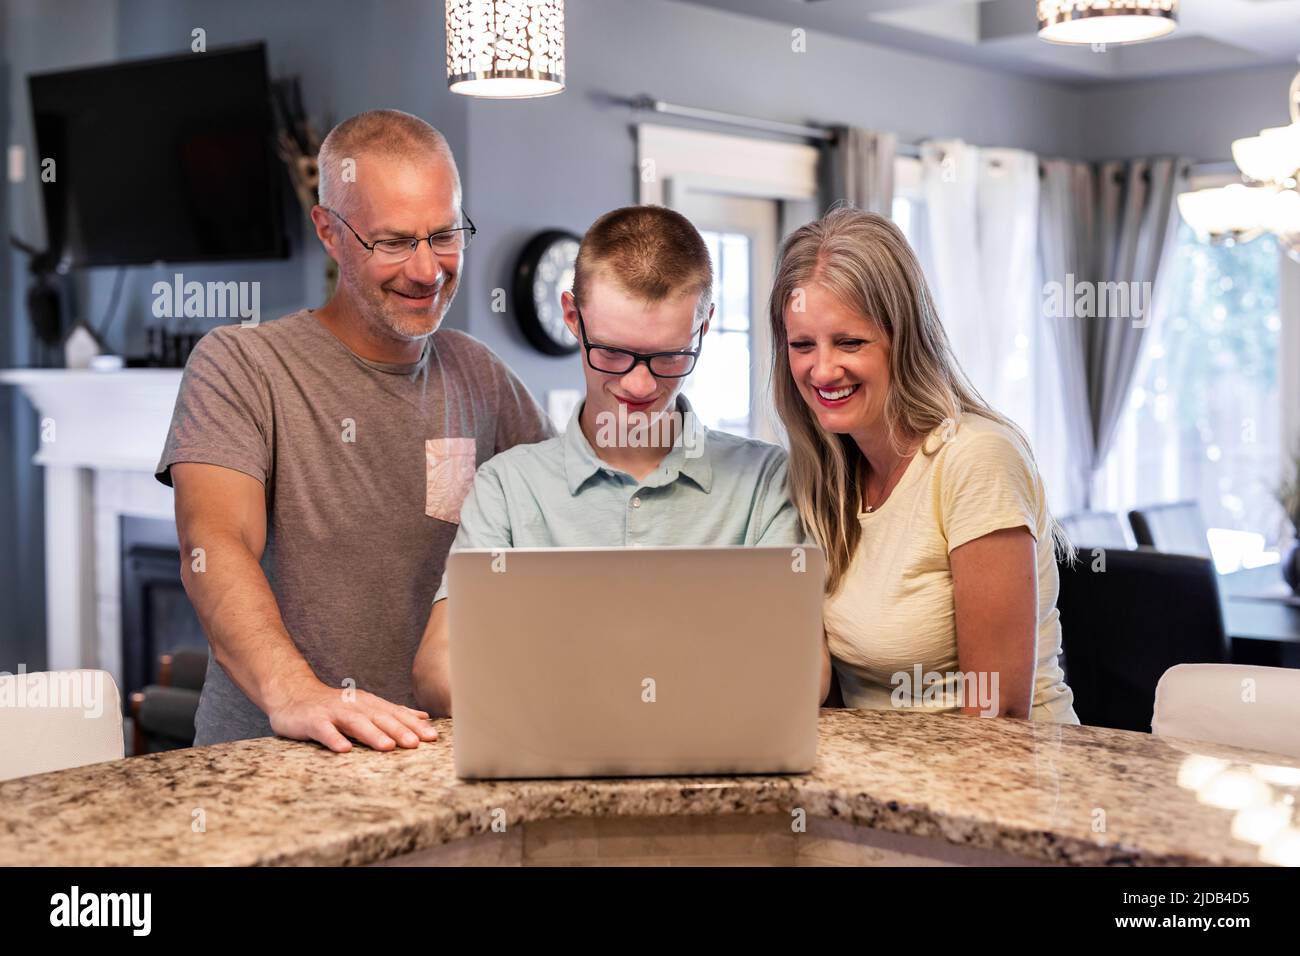 Hombre joven usando una computadora portátil en casa con sus padres mirando; Edmonton, Alberta, Canadá Foto de stock